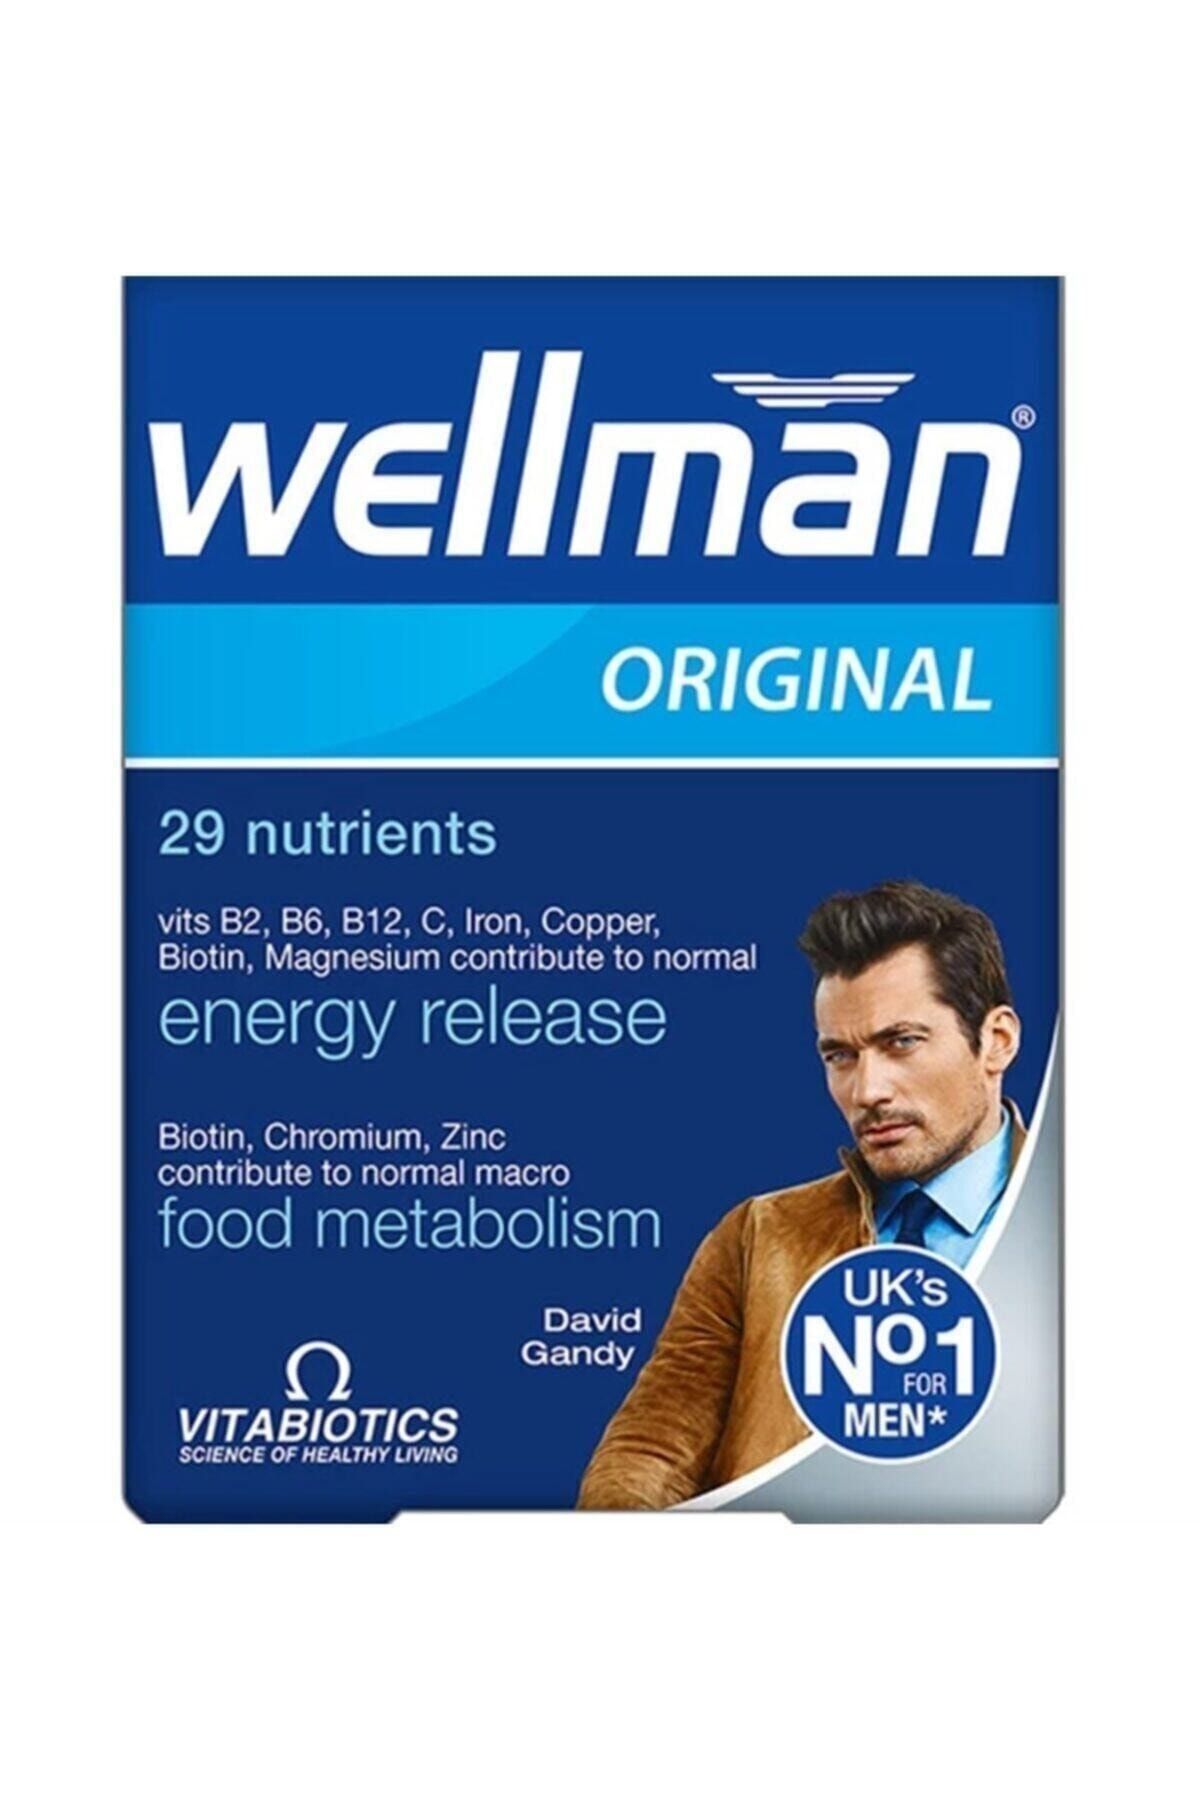 Витамины для мужчин 45. Wellman Vitabiotics Original. Wellman Original витамины для мужчин. Wellman витамины для мужчин 50+. Велмен таб 30.